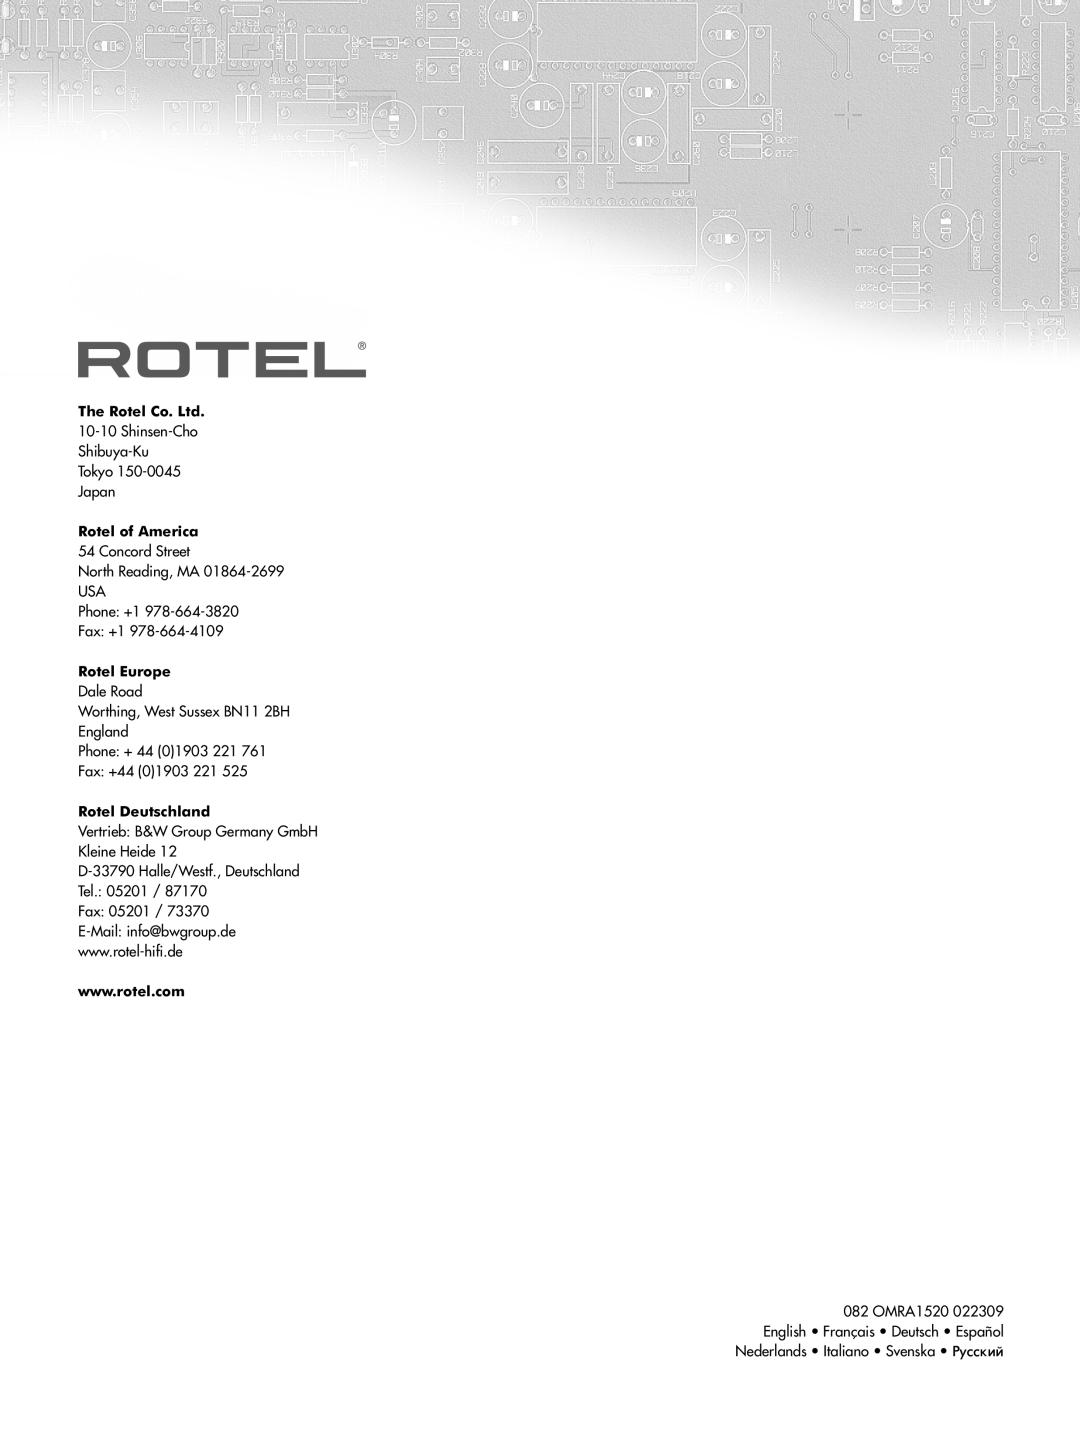 Rotel RA-1520 owner manual RA‑1520 àÌÚÂ„ËÓ‚‡ÌÌ˚È ÒÚÂÂÓ ÛÒËÎËÚÂÎ¸, Rotel of America, Rotel Europe, Rotel Deutschland 